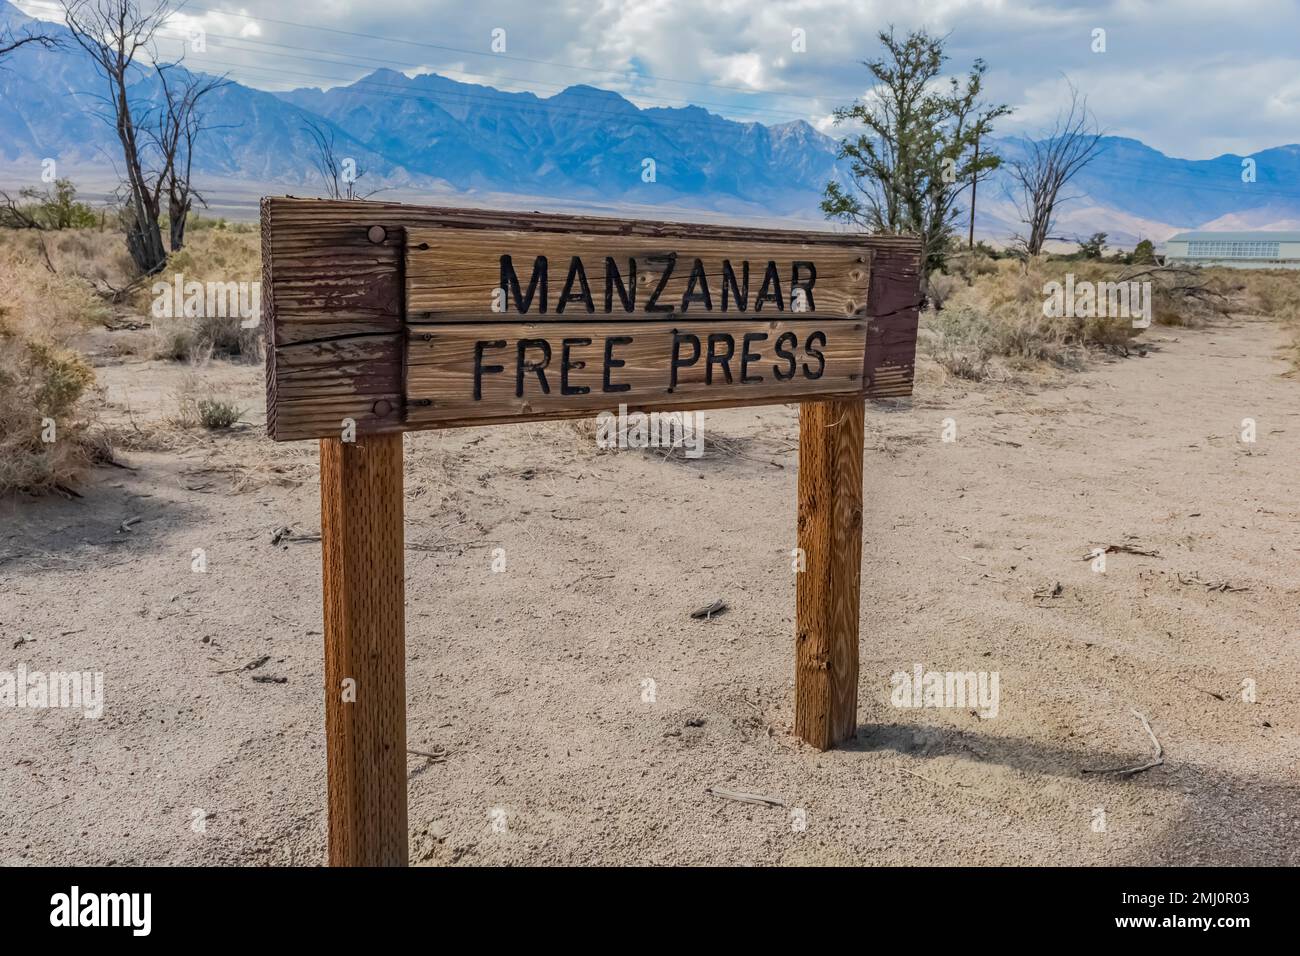 Unterschreiben Sie für die Manzanar Free Press-Zeitung an der Manzanar National Historic Site, Owens Valley, Kalifornien, USA Stockfoto